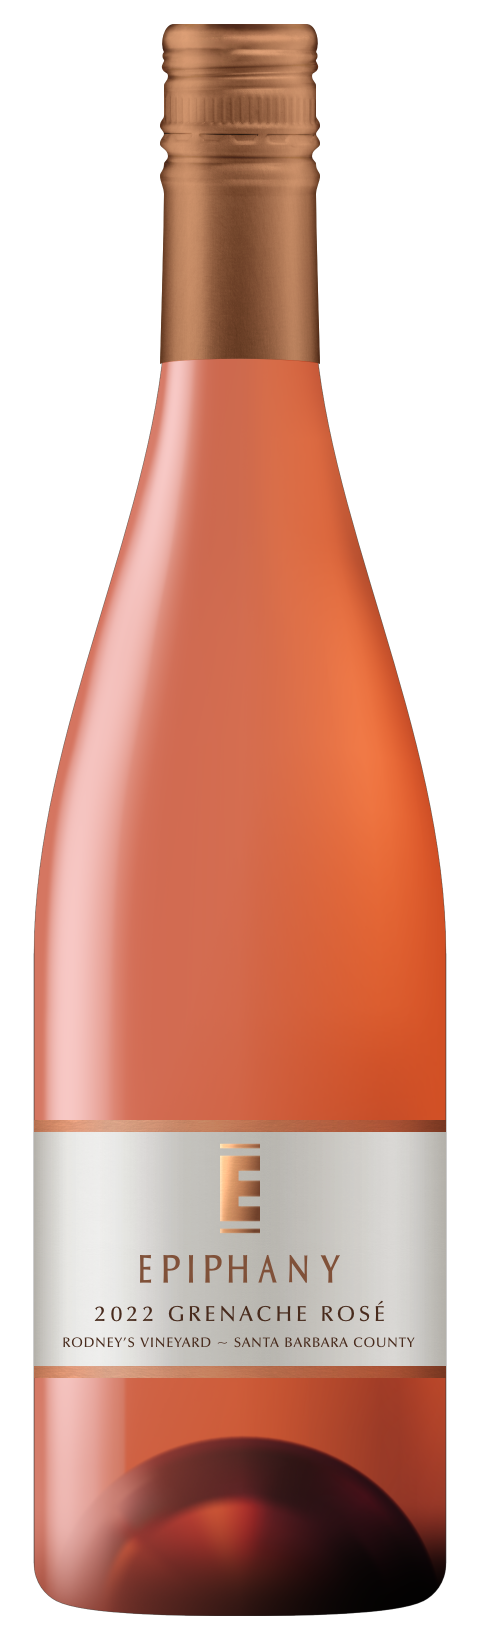 Fess Parker Wine Shop - Products - 2022 Grenache Rosé